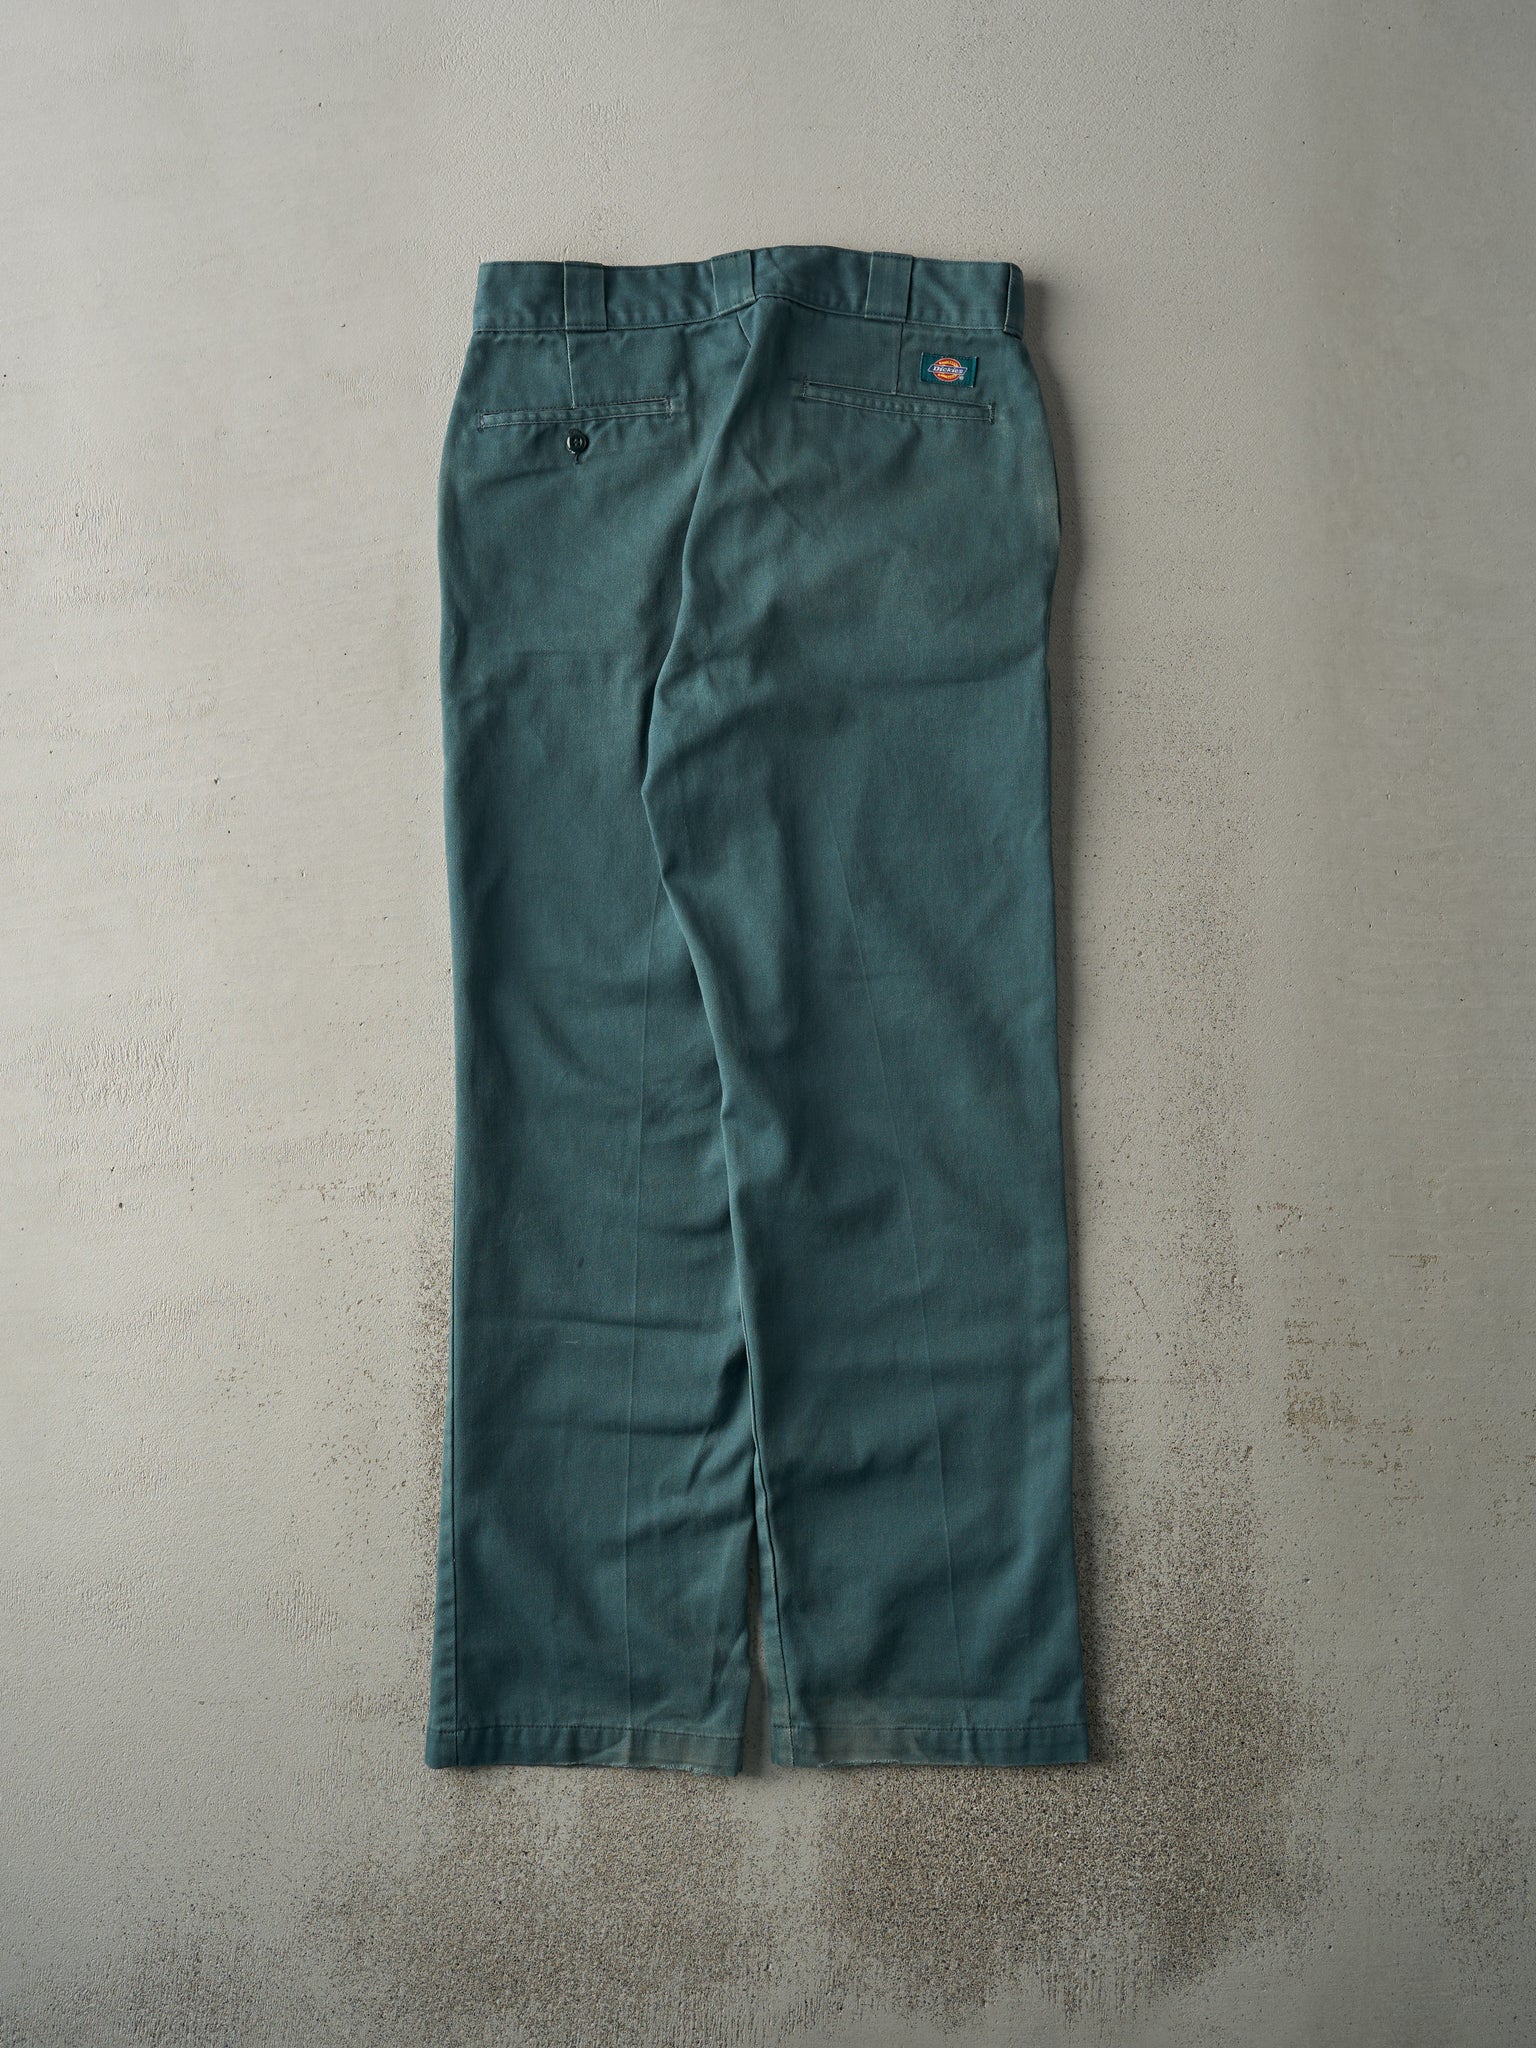 Vintage 90s Green Dickies Work Pants (32x31.5)